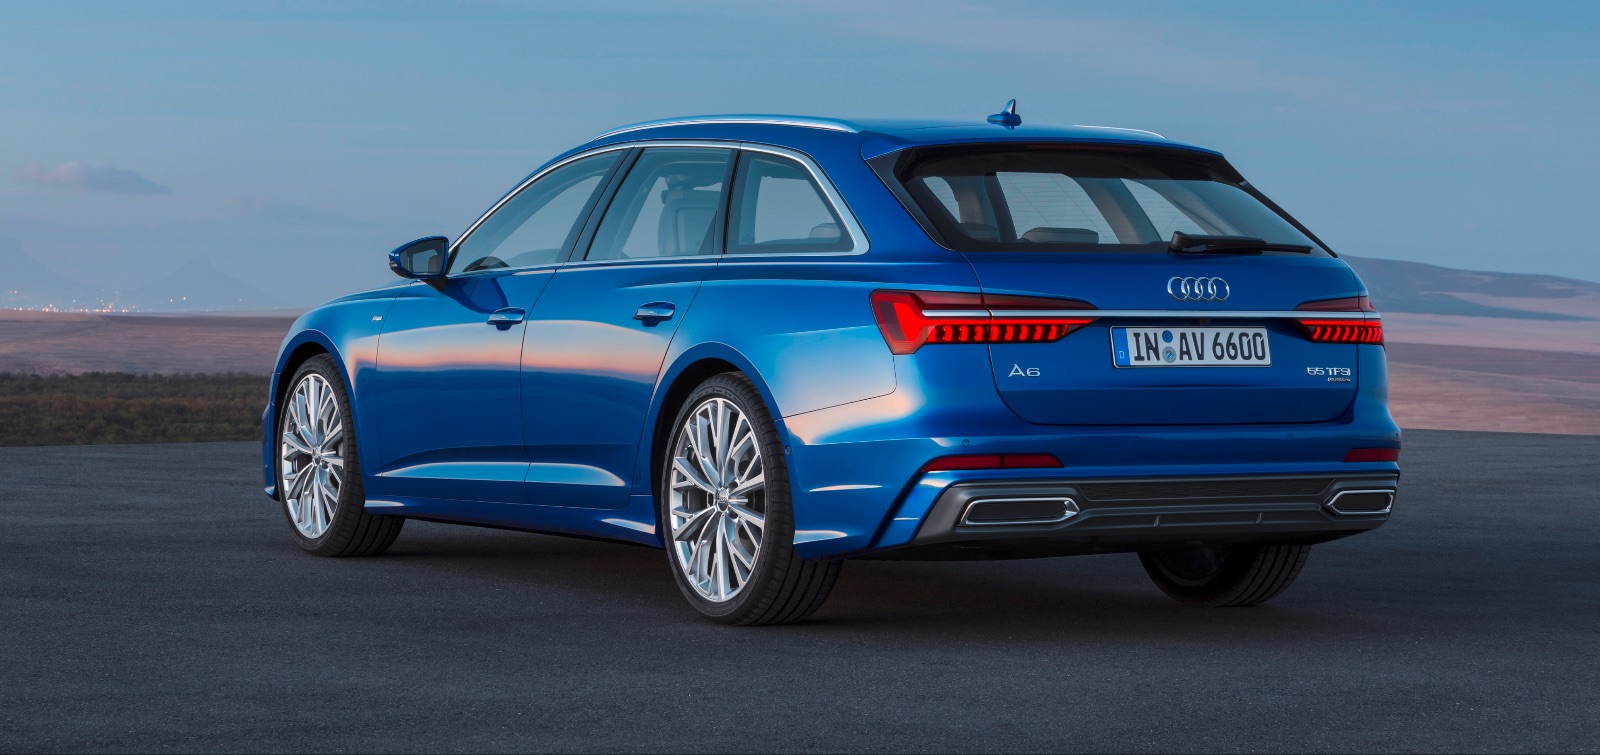 Audi A6 Avant 2018, vista posteriore e dimensioni: 4,94 metri di lunghezza, 1,89 metri di larghezza, 1,47 metri di altezza.